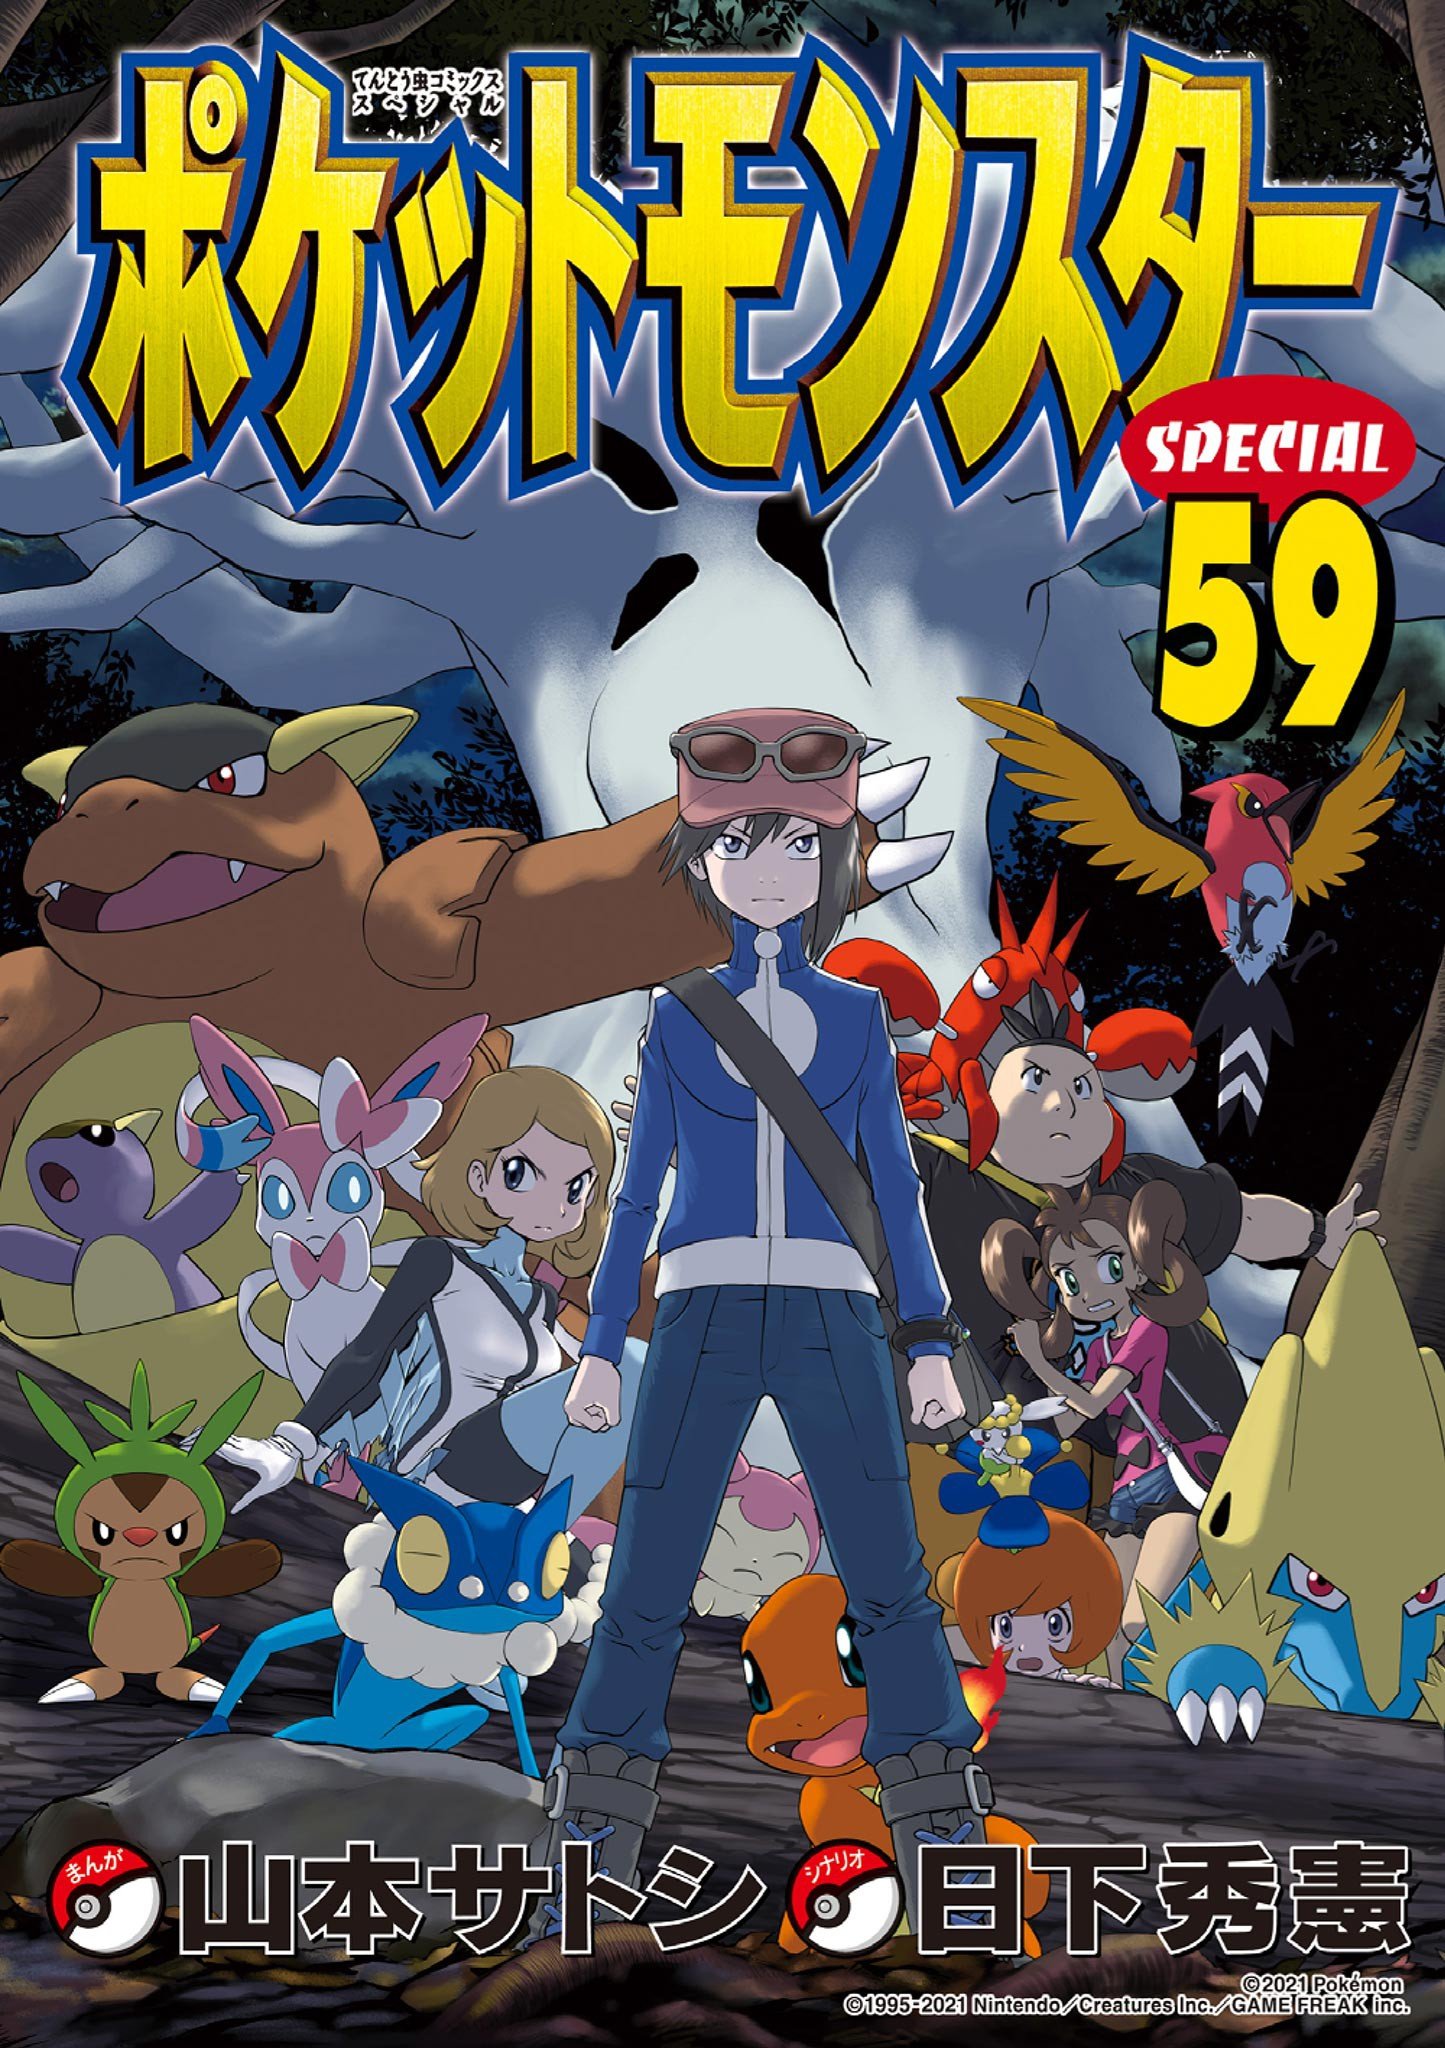 Pokémon Special cover 5